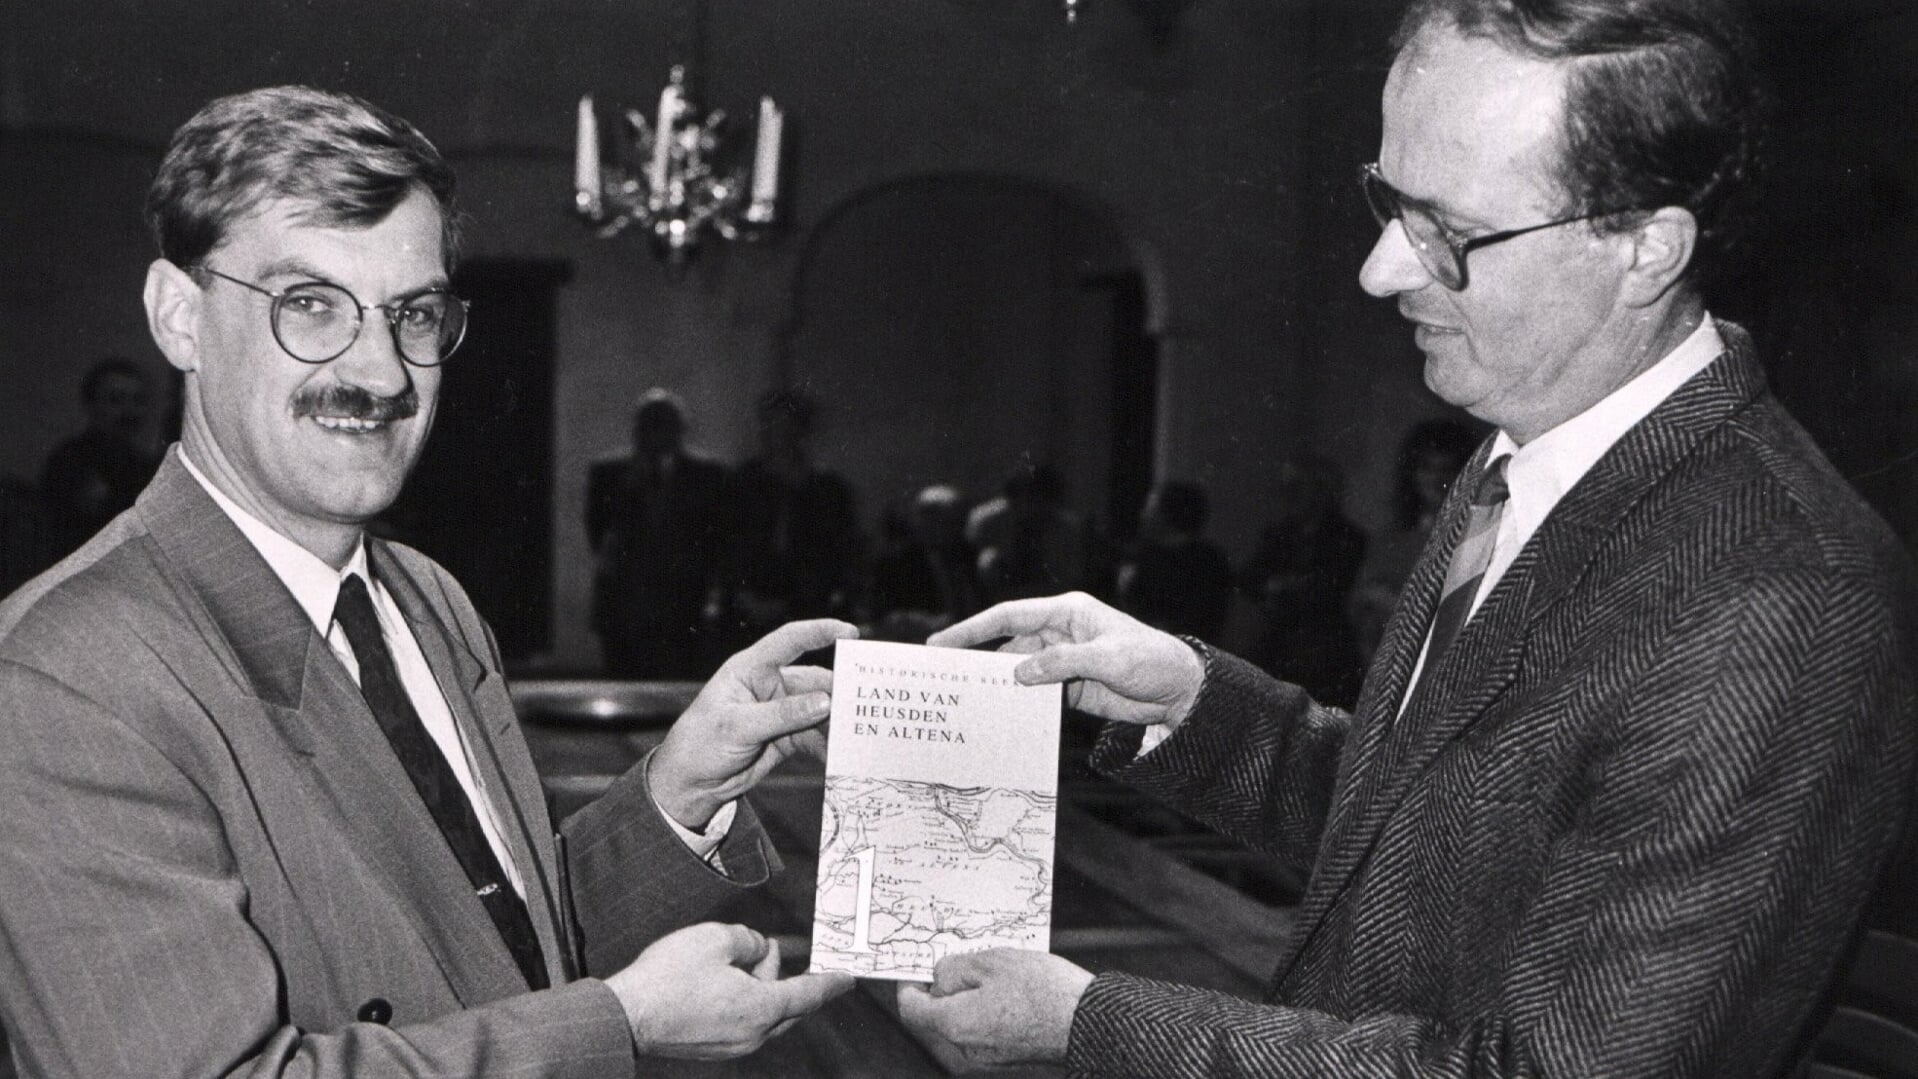 • De uitreiking van het eerste deel van de Historische Reeks Land van Heusden en Altena aan burgemeester Hellegers (links) door voorzitter Cees de Gast in 1990.